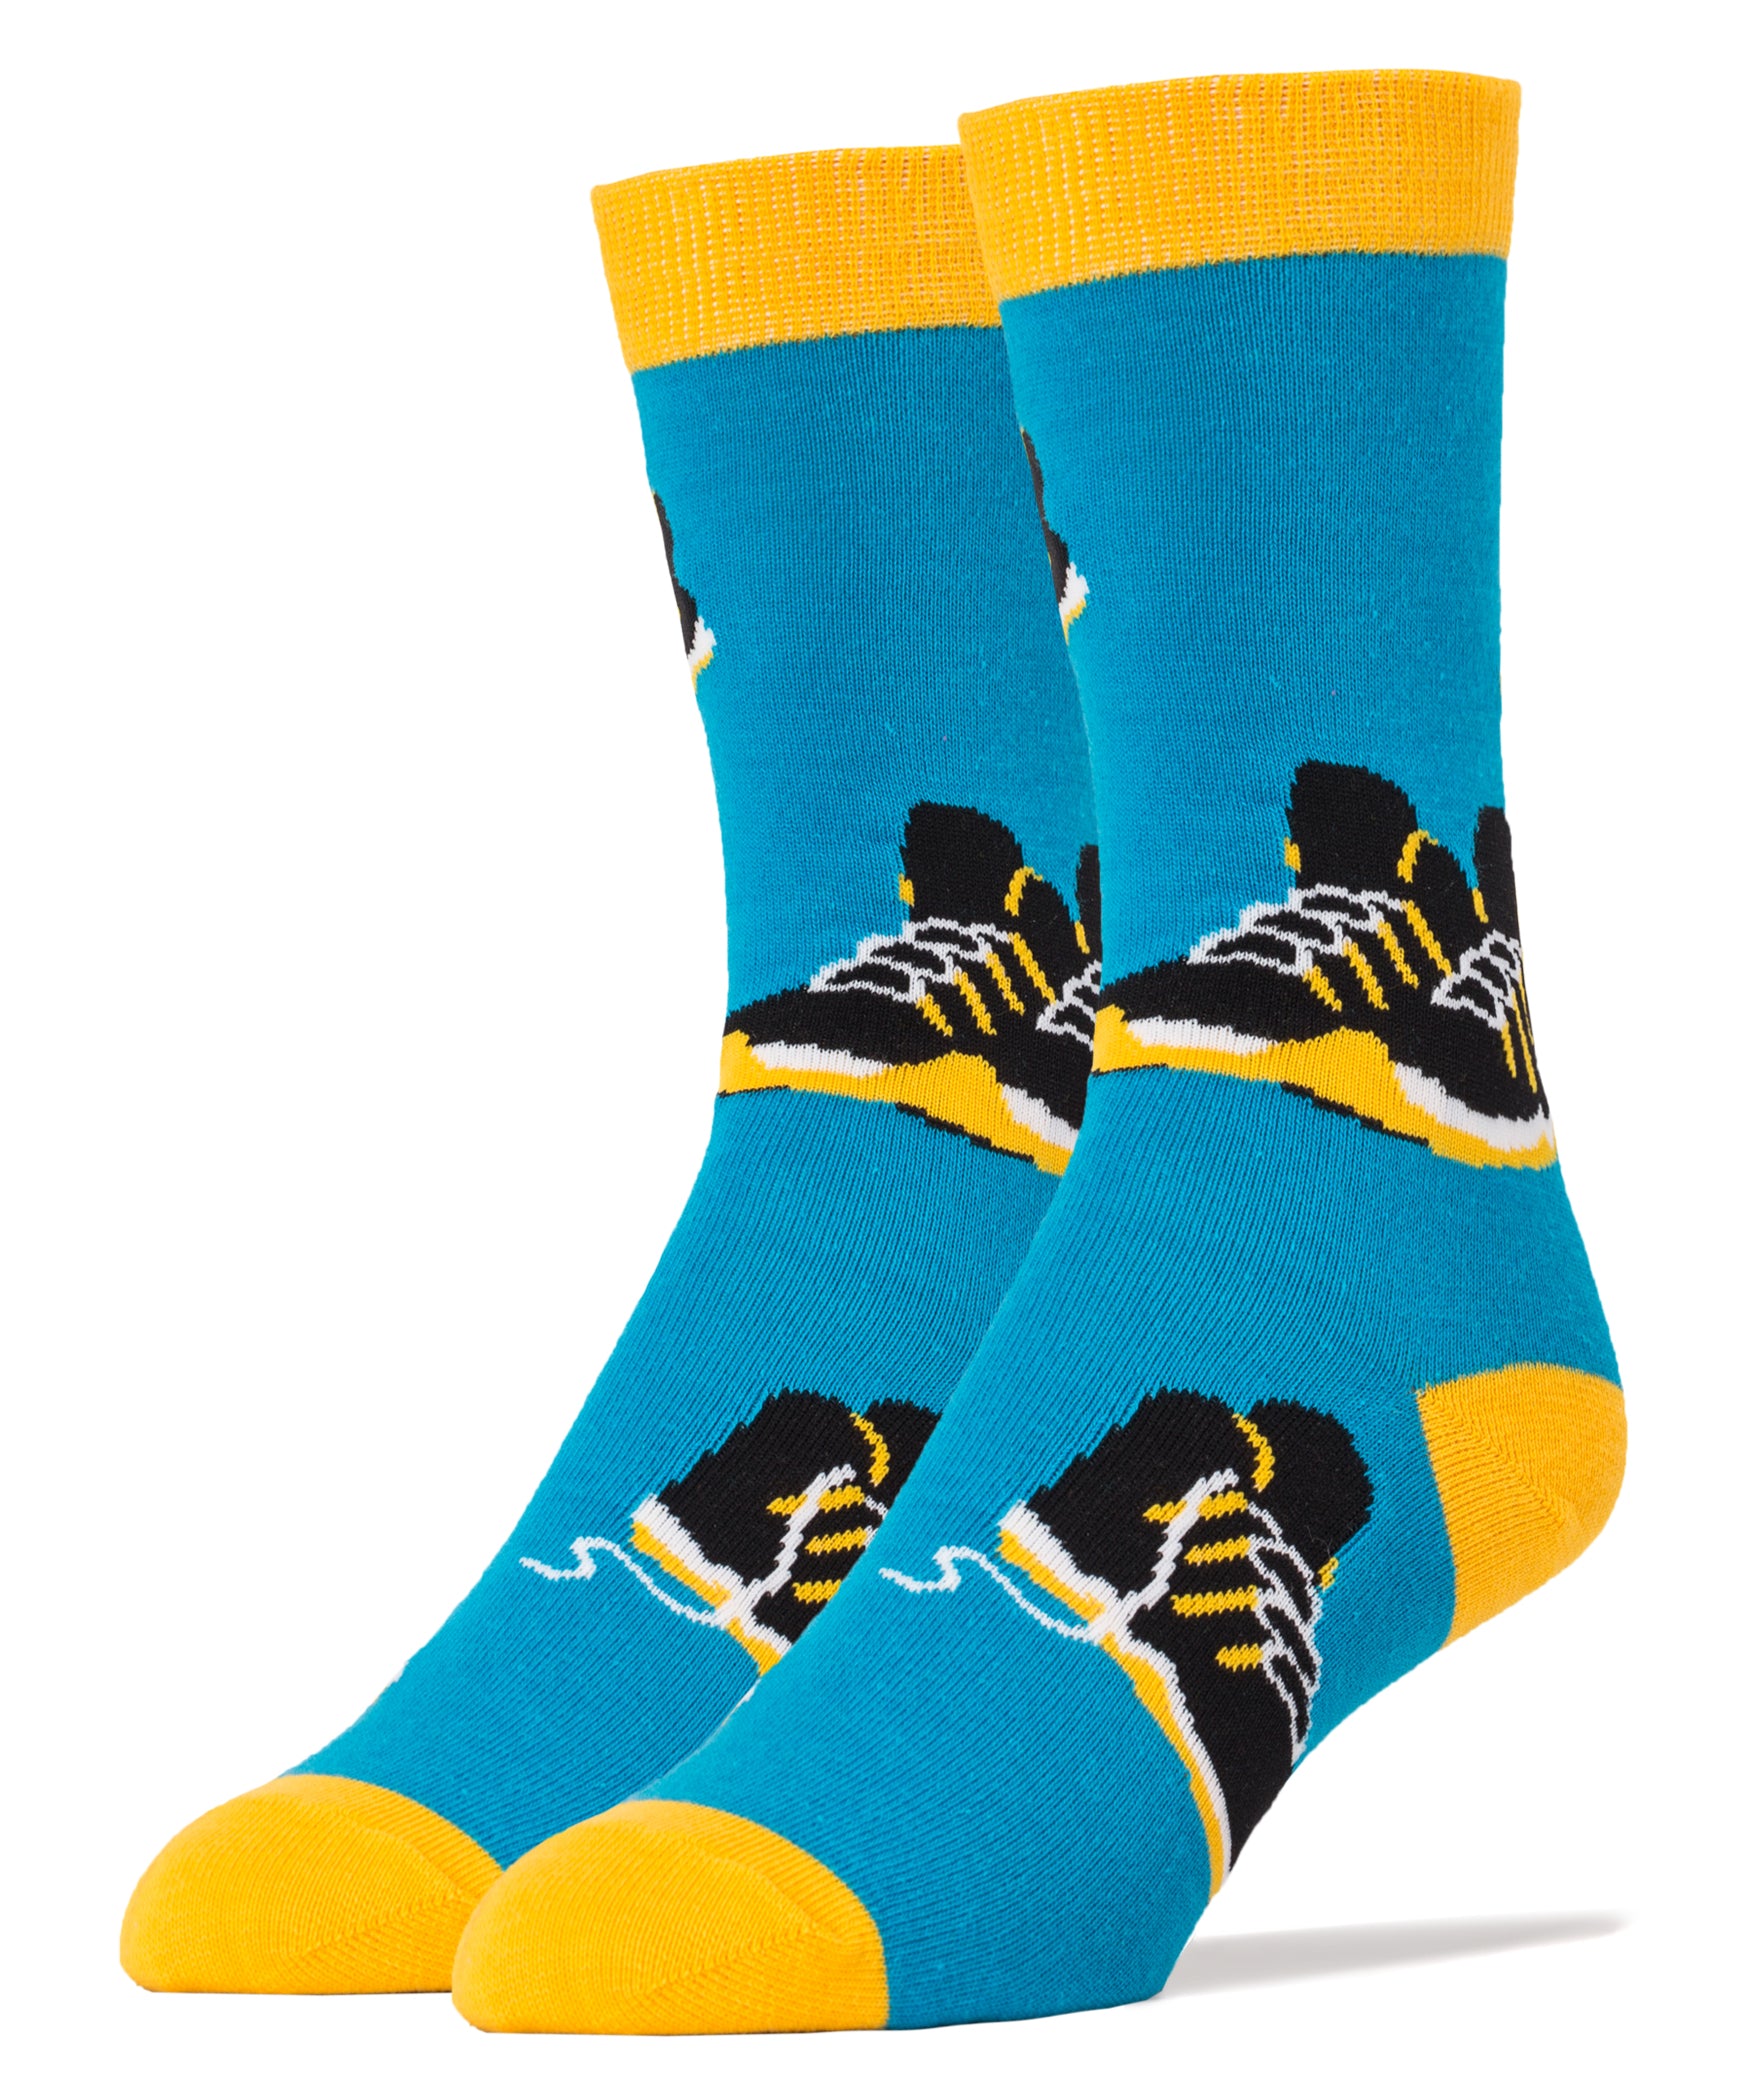 Sneaker Head Socks | Novelty Crew Socks For Men